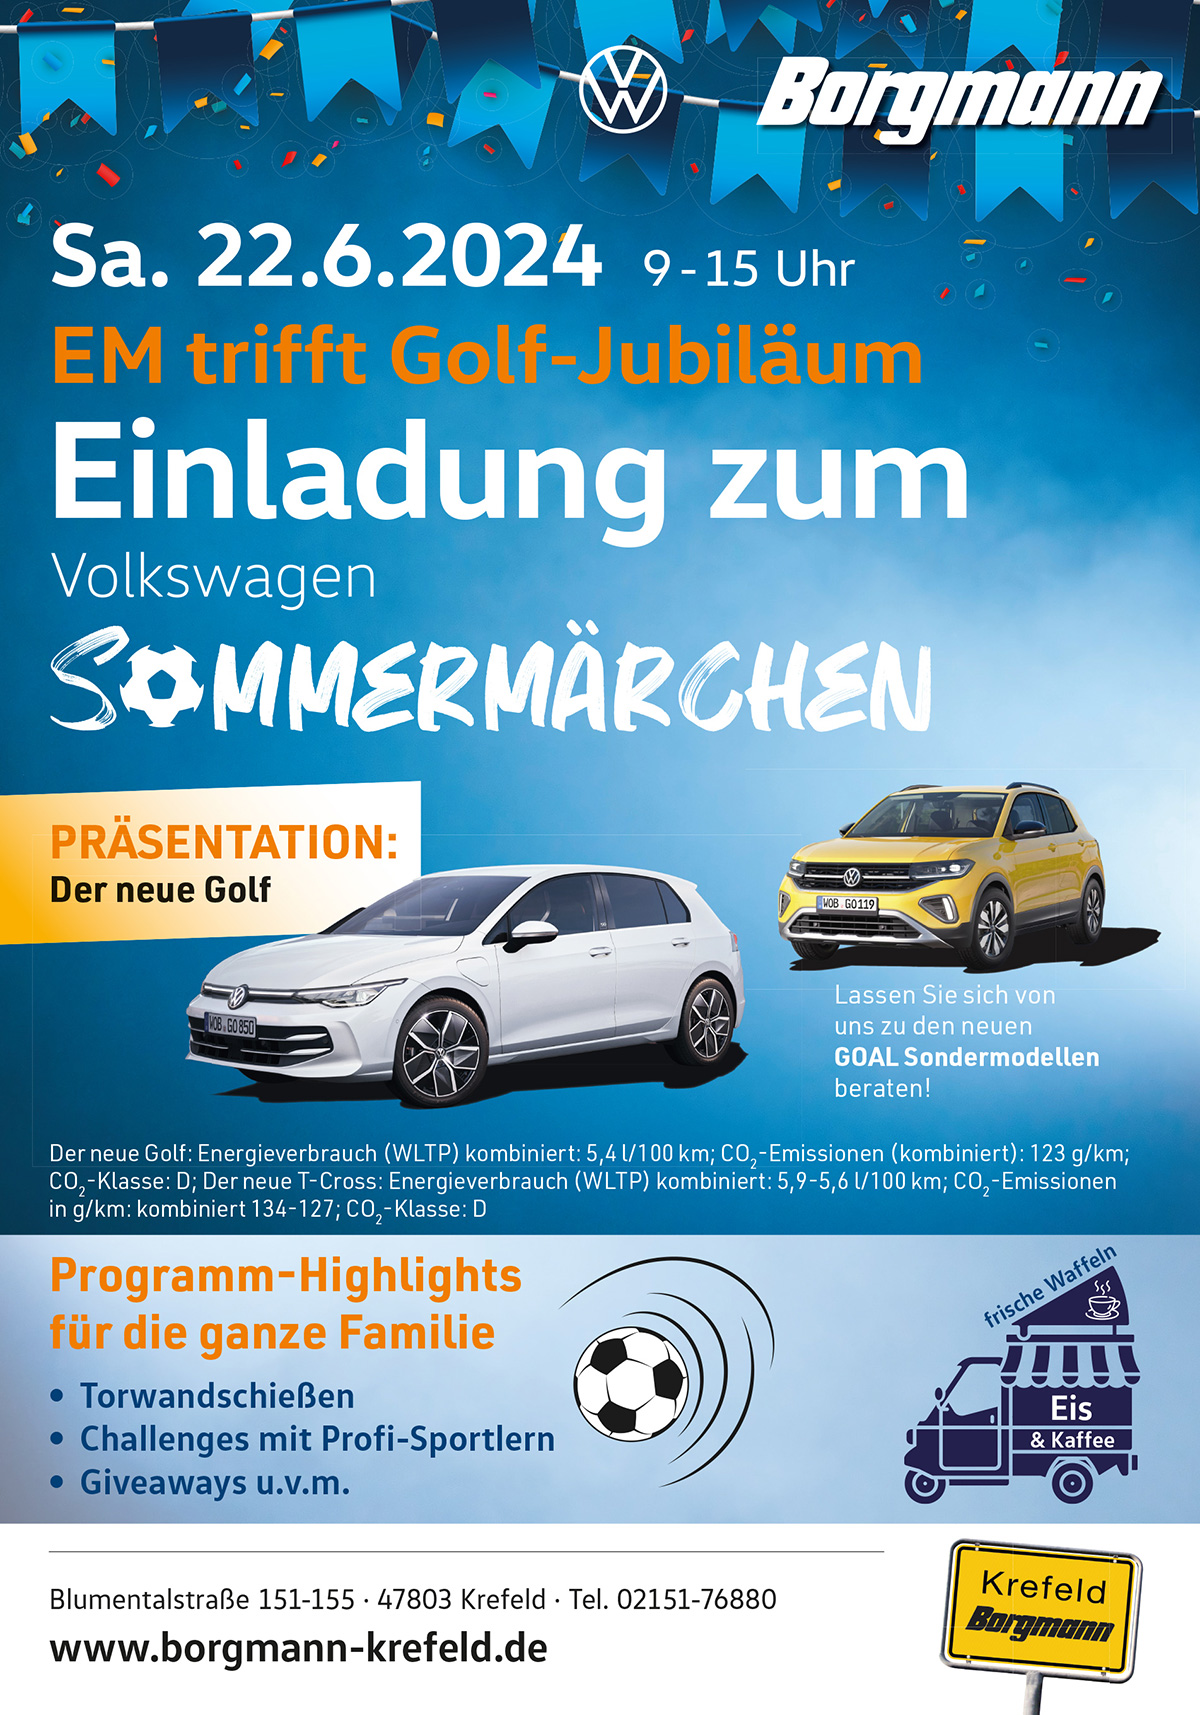 VW Sommermärchen mit Golf Präsentation bei Borgmann